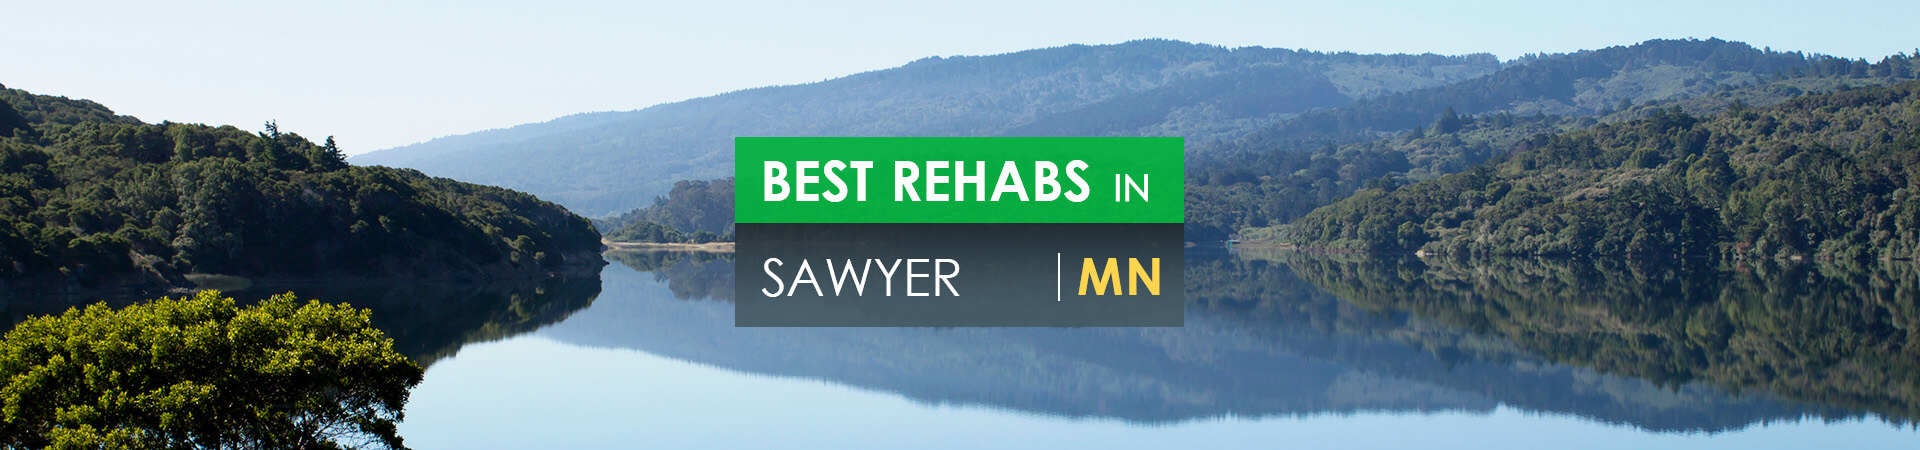 Best rehabs in Sawyer, MN